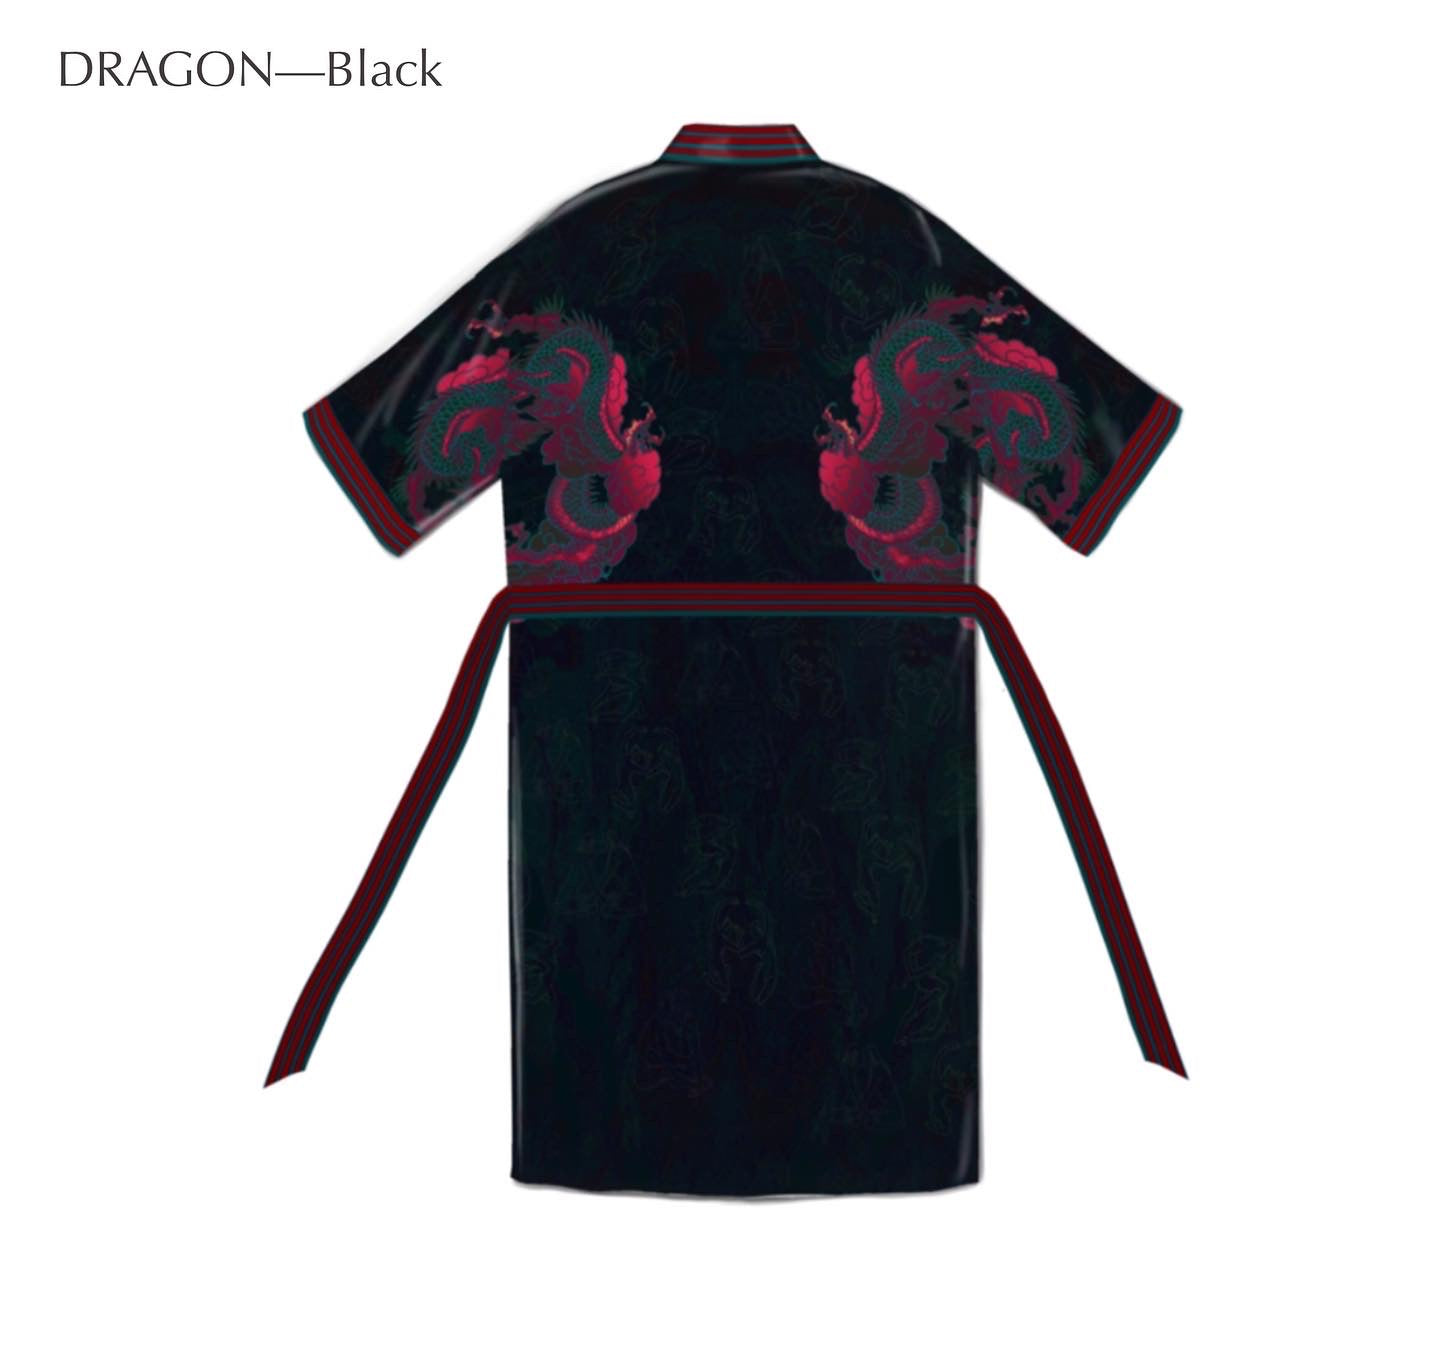 Night Dragon—Black